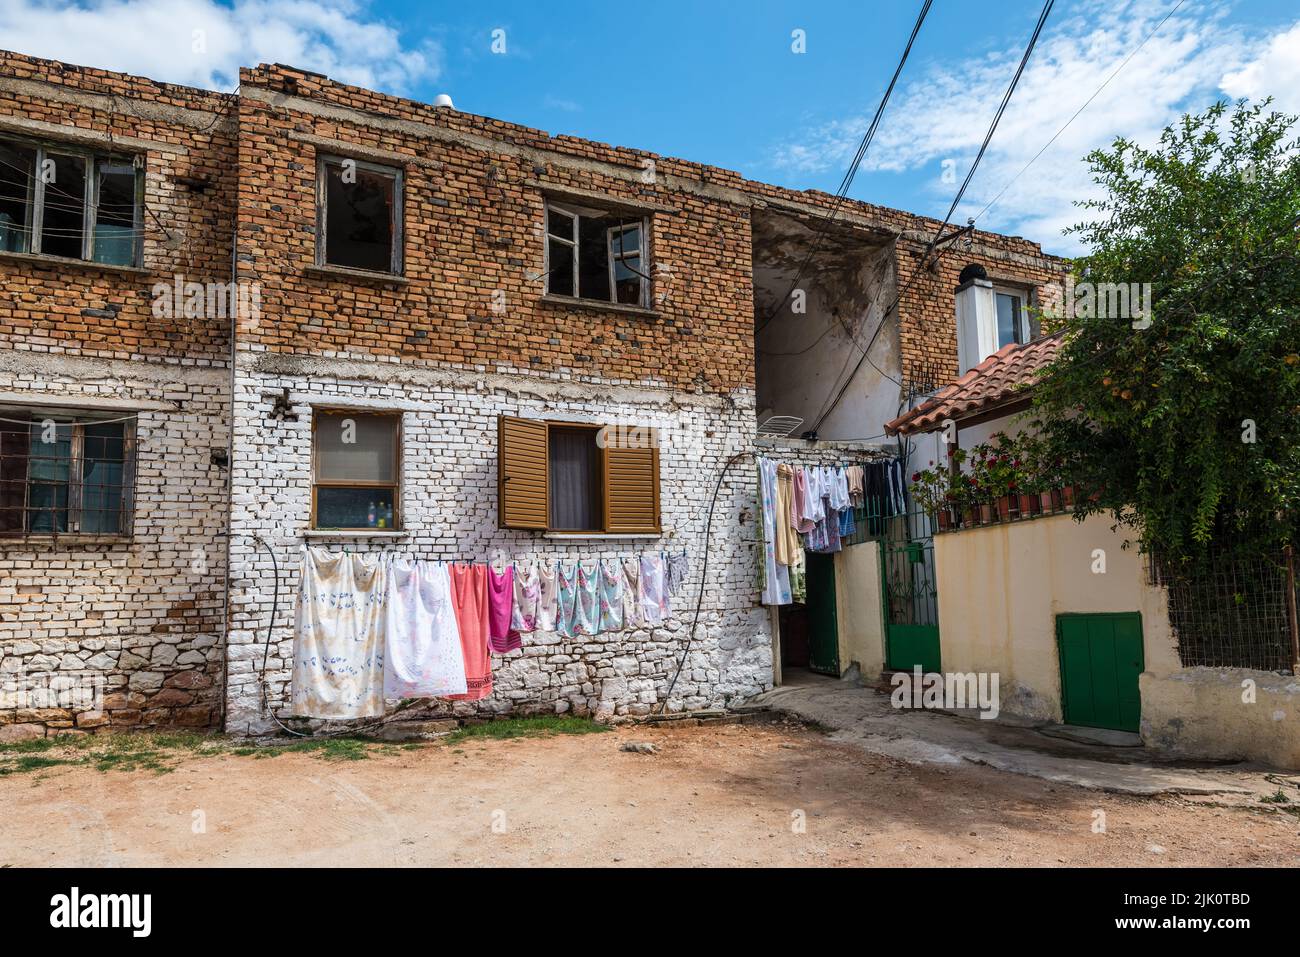 Ksamil, Albania - 9 de septiembre de 2021: Vista de la calle de Ksamil en el día con la casa antigua en una zona pobre. La lavandería se seca en una cuerda afuera. Foto de stock